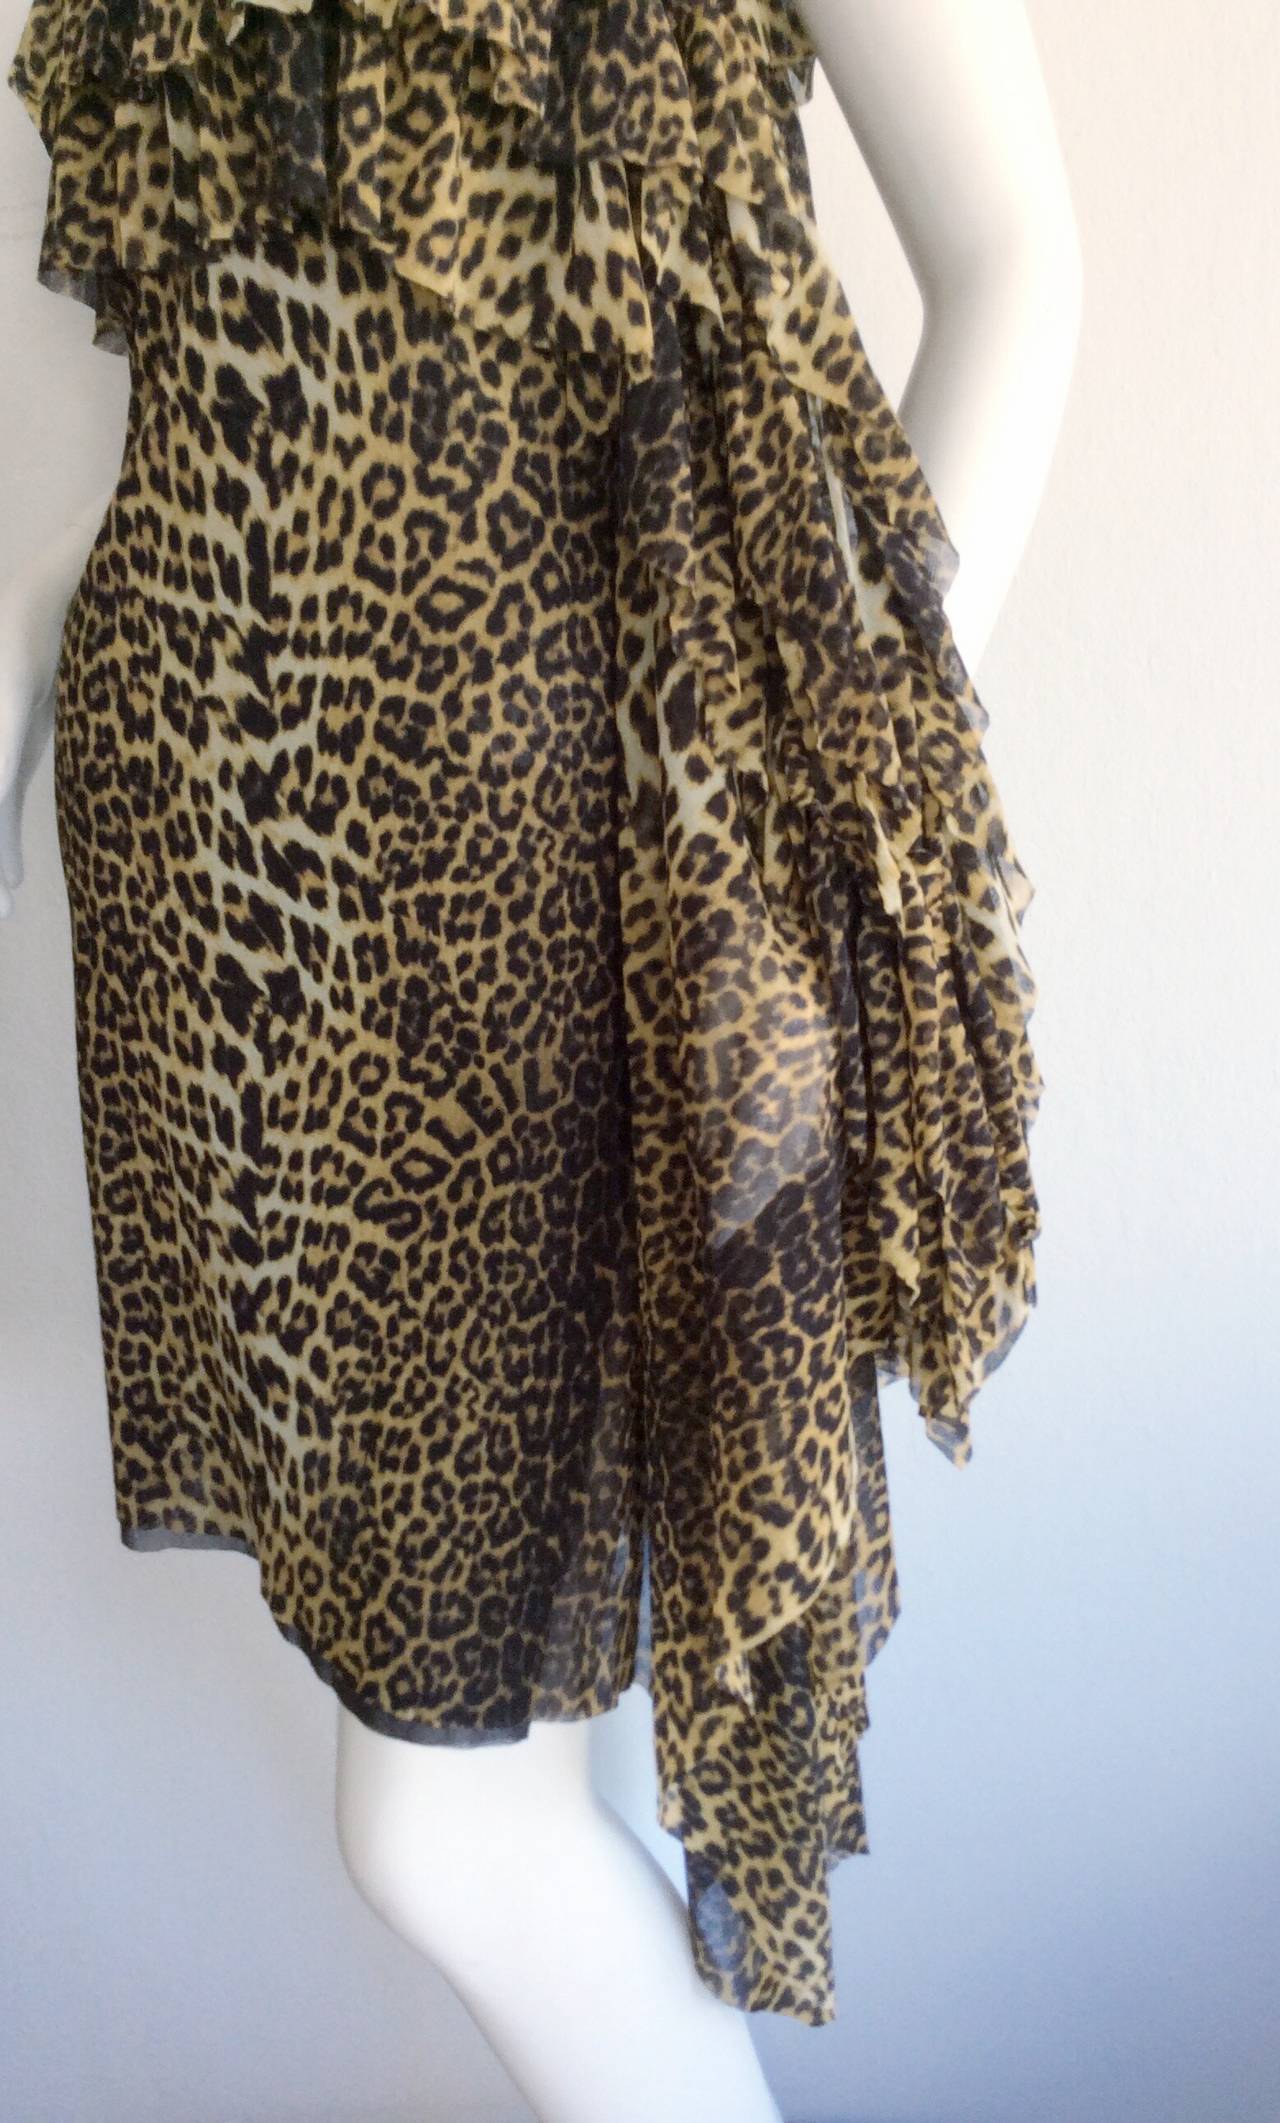 jean paul gaultier leopard beaded dress